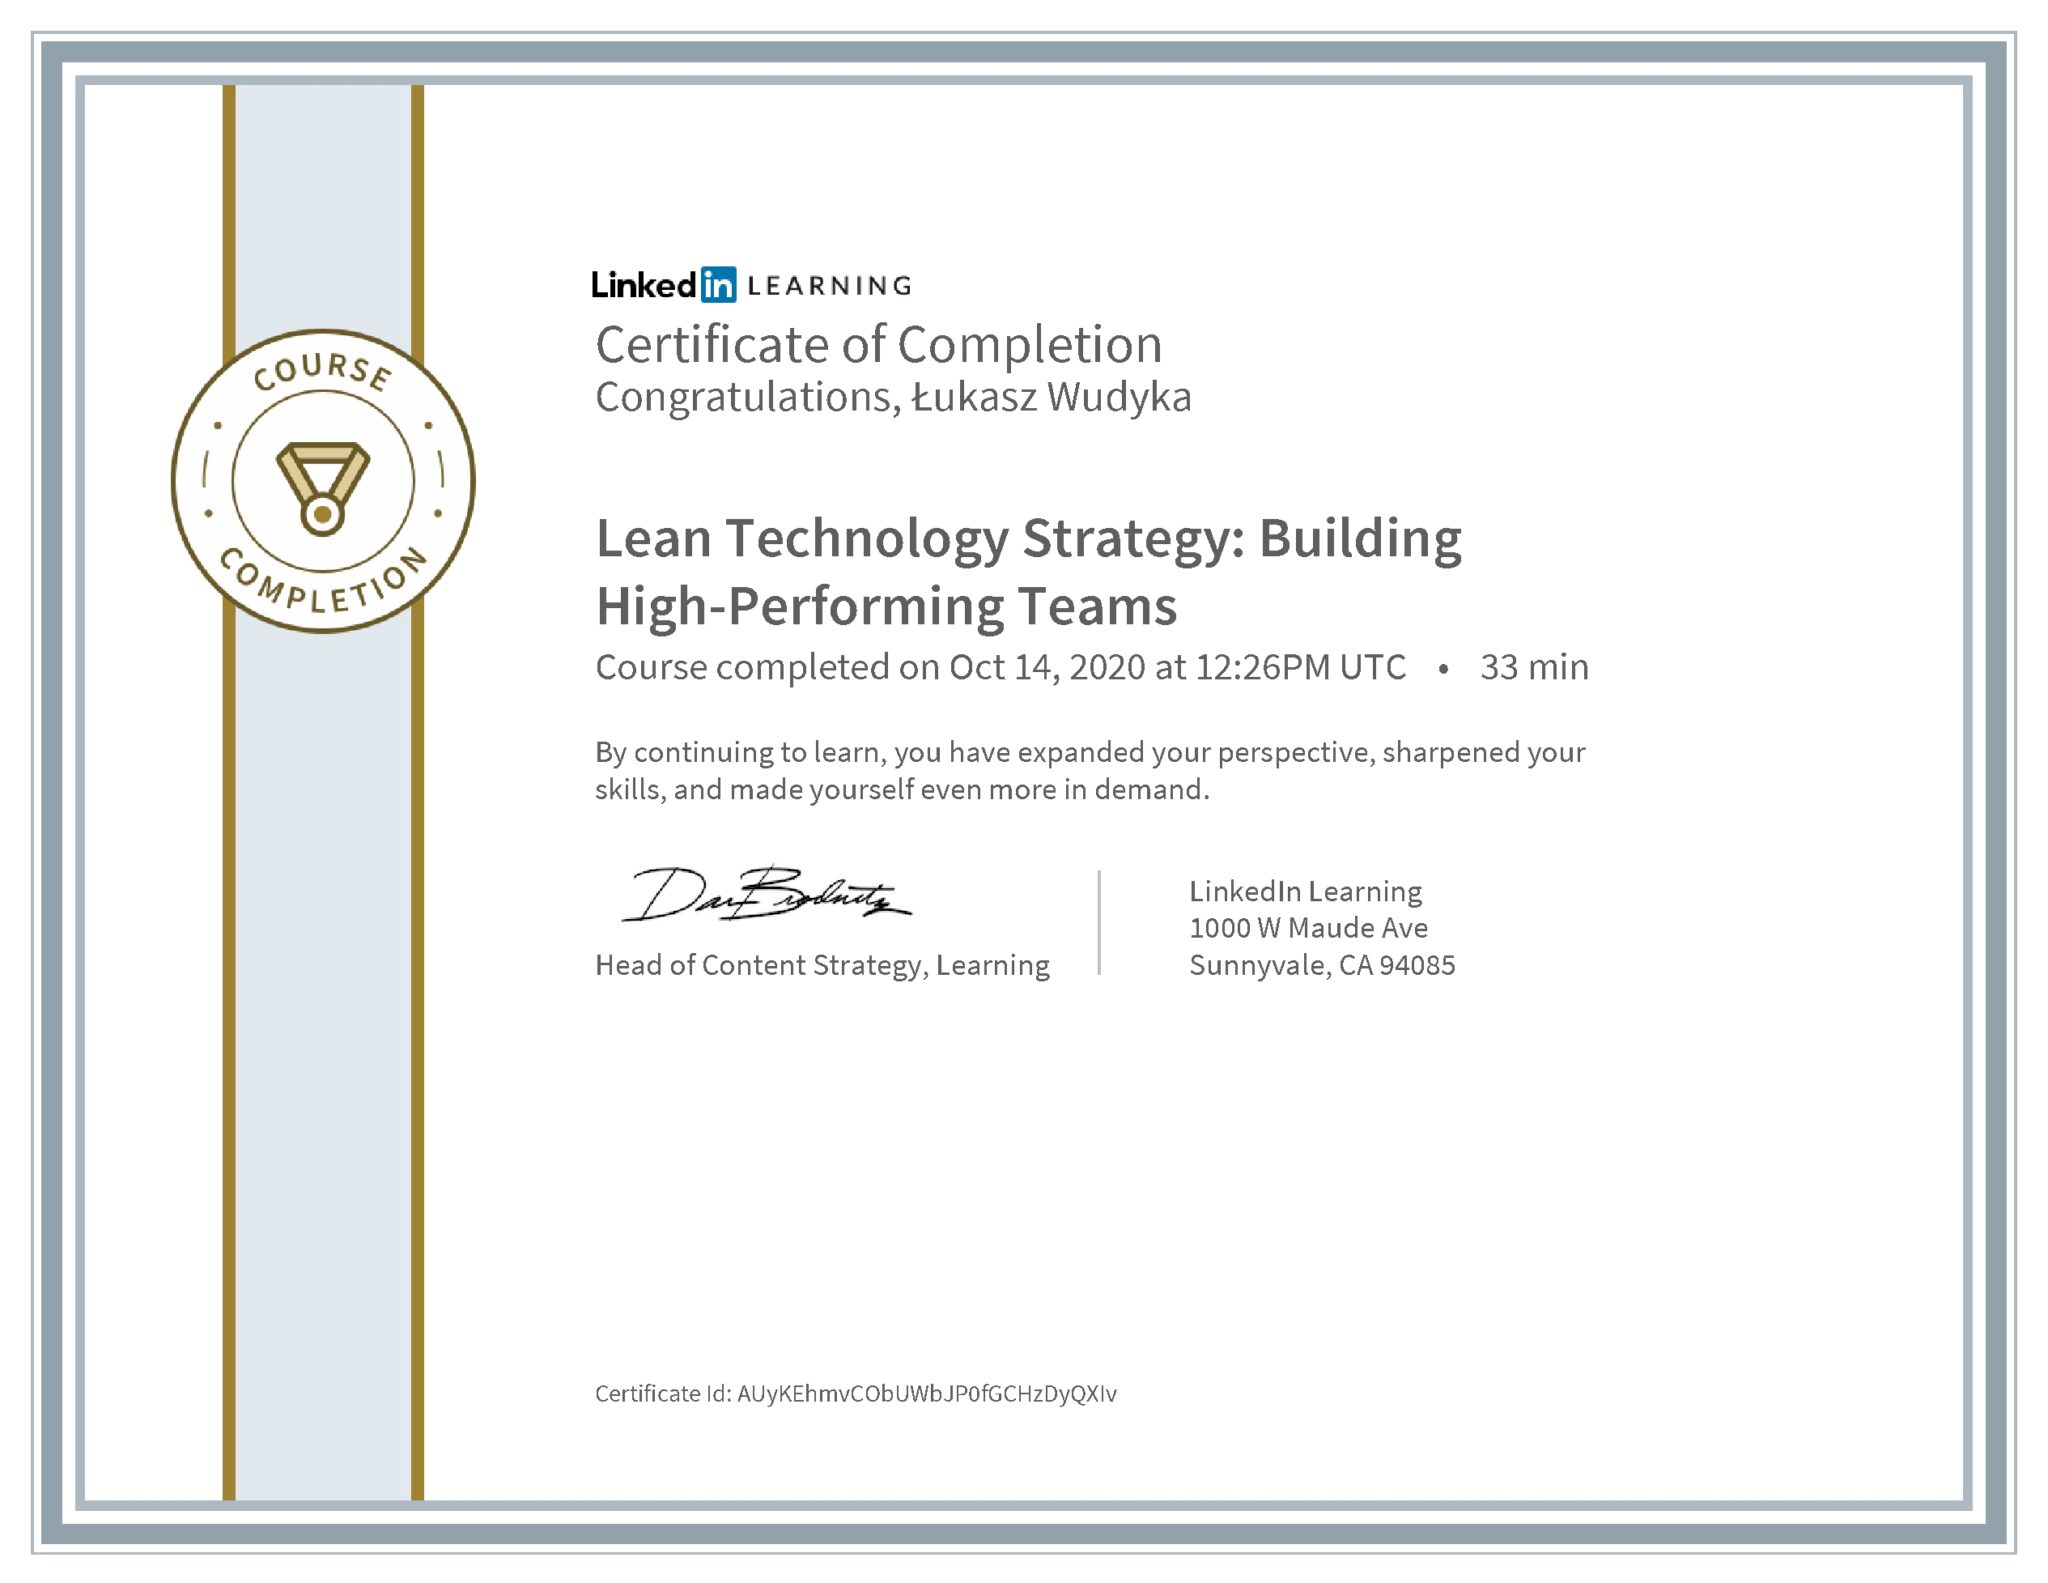 Łukasz Wudyka certyfikat LinkedIn Lean Technology Strategy: Building High-Performing Teams